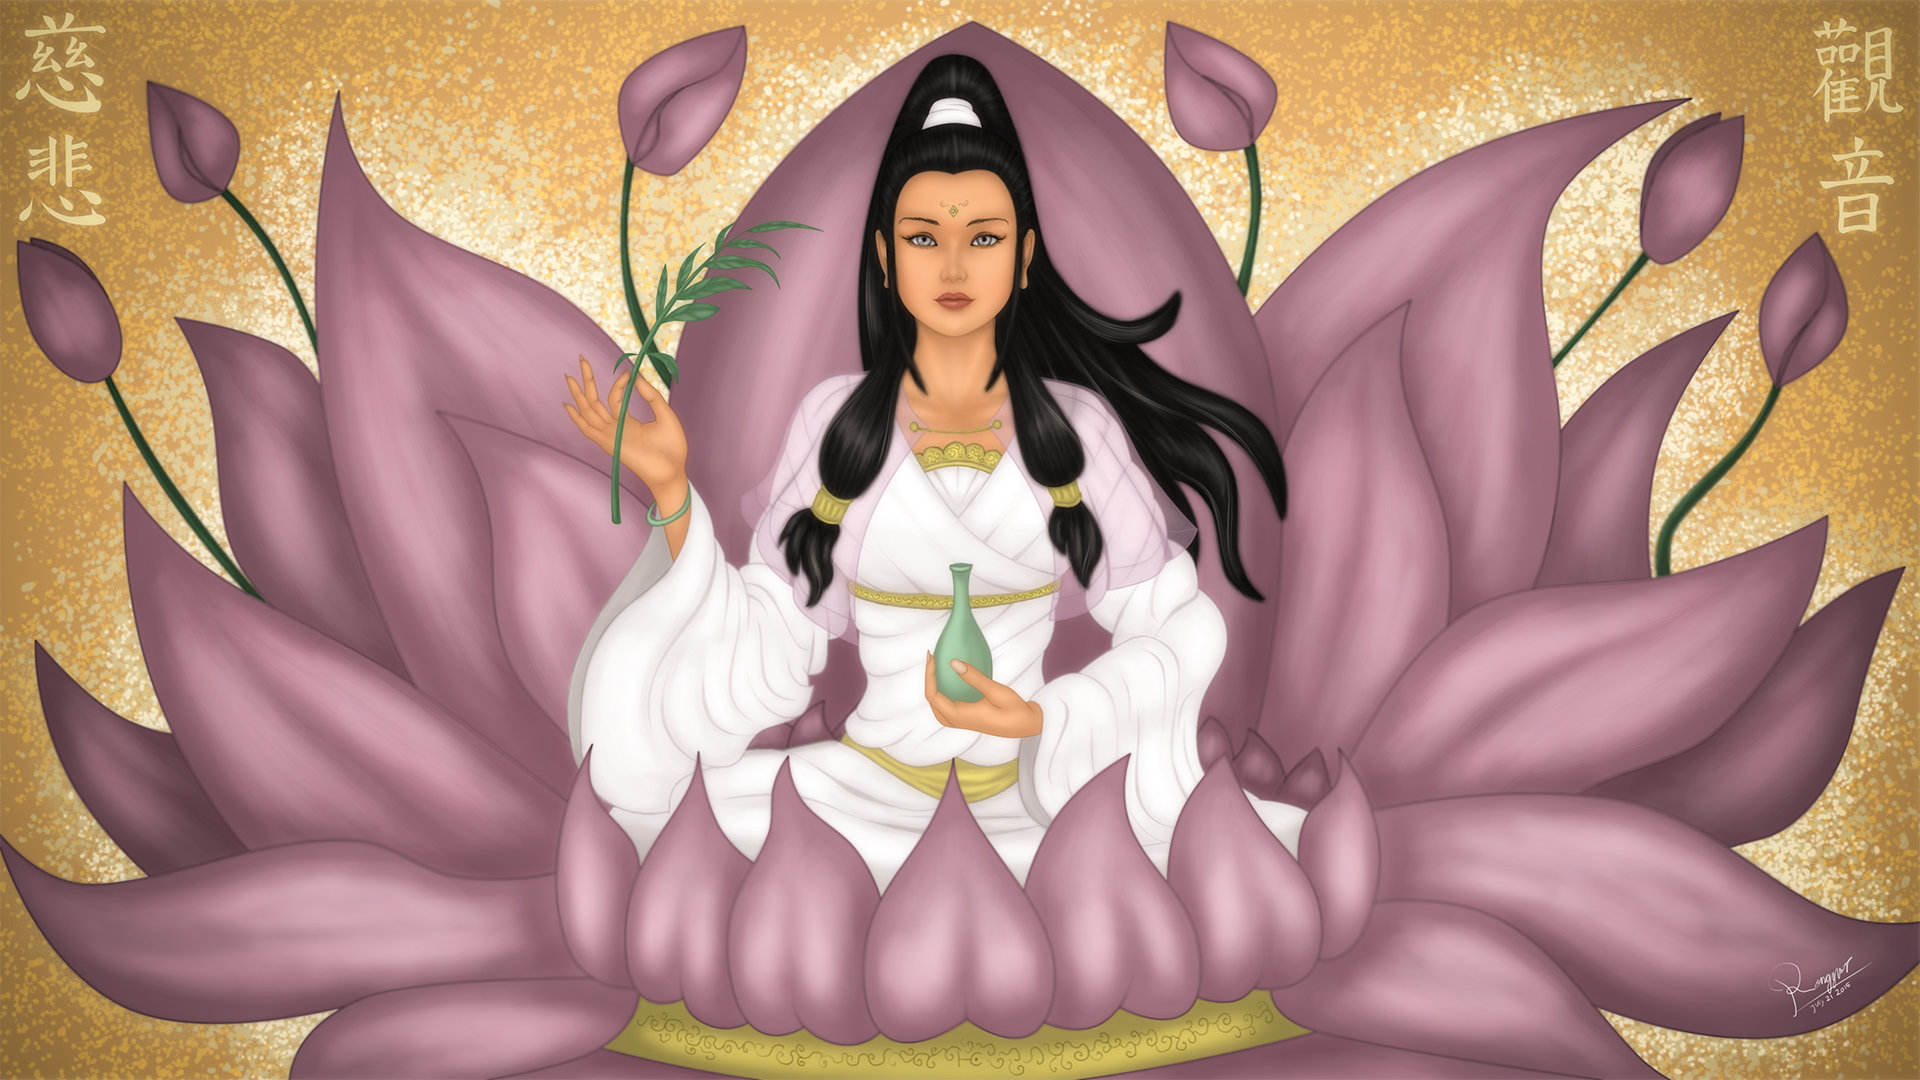 The Avalokitesvara Bodhisattva